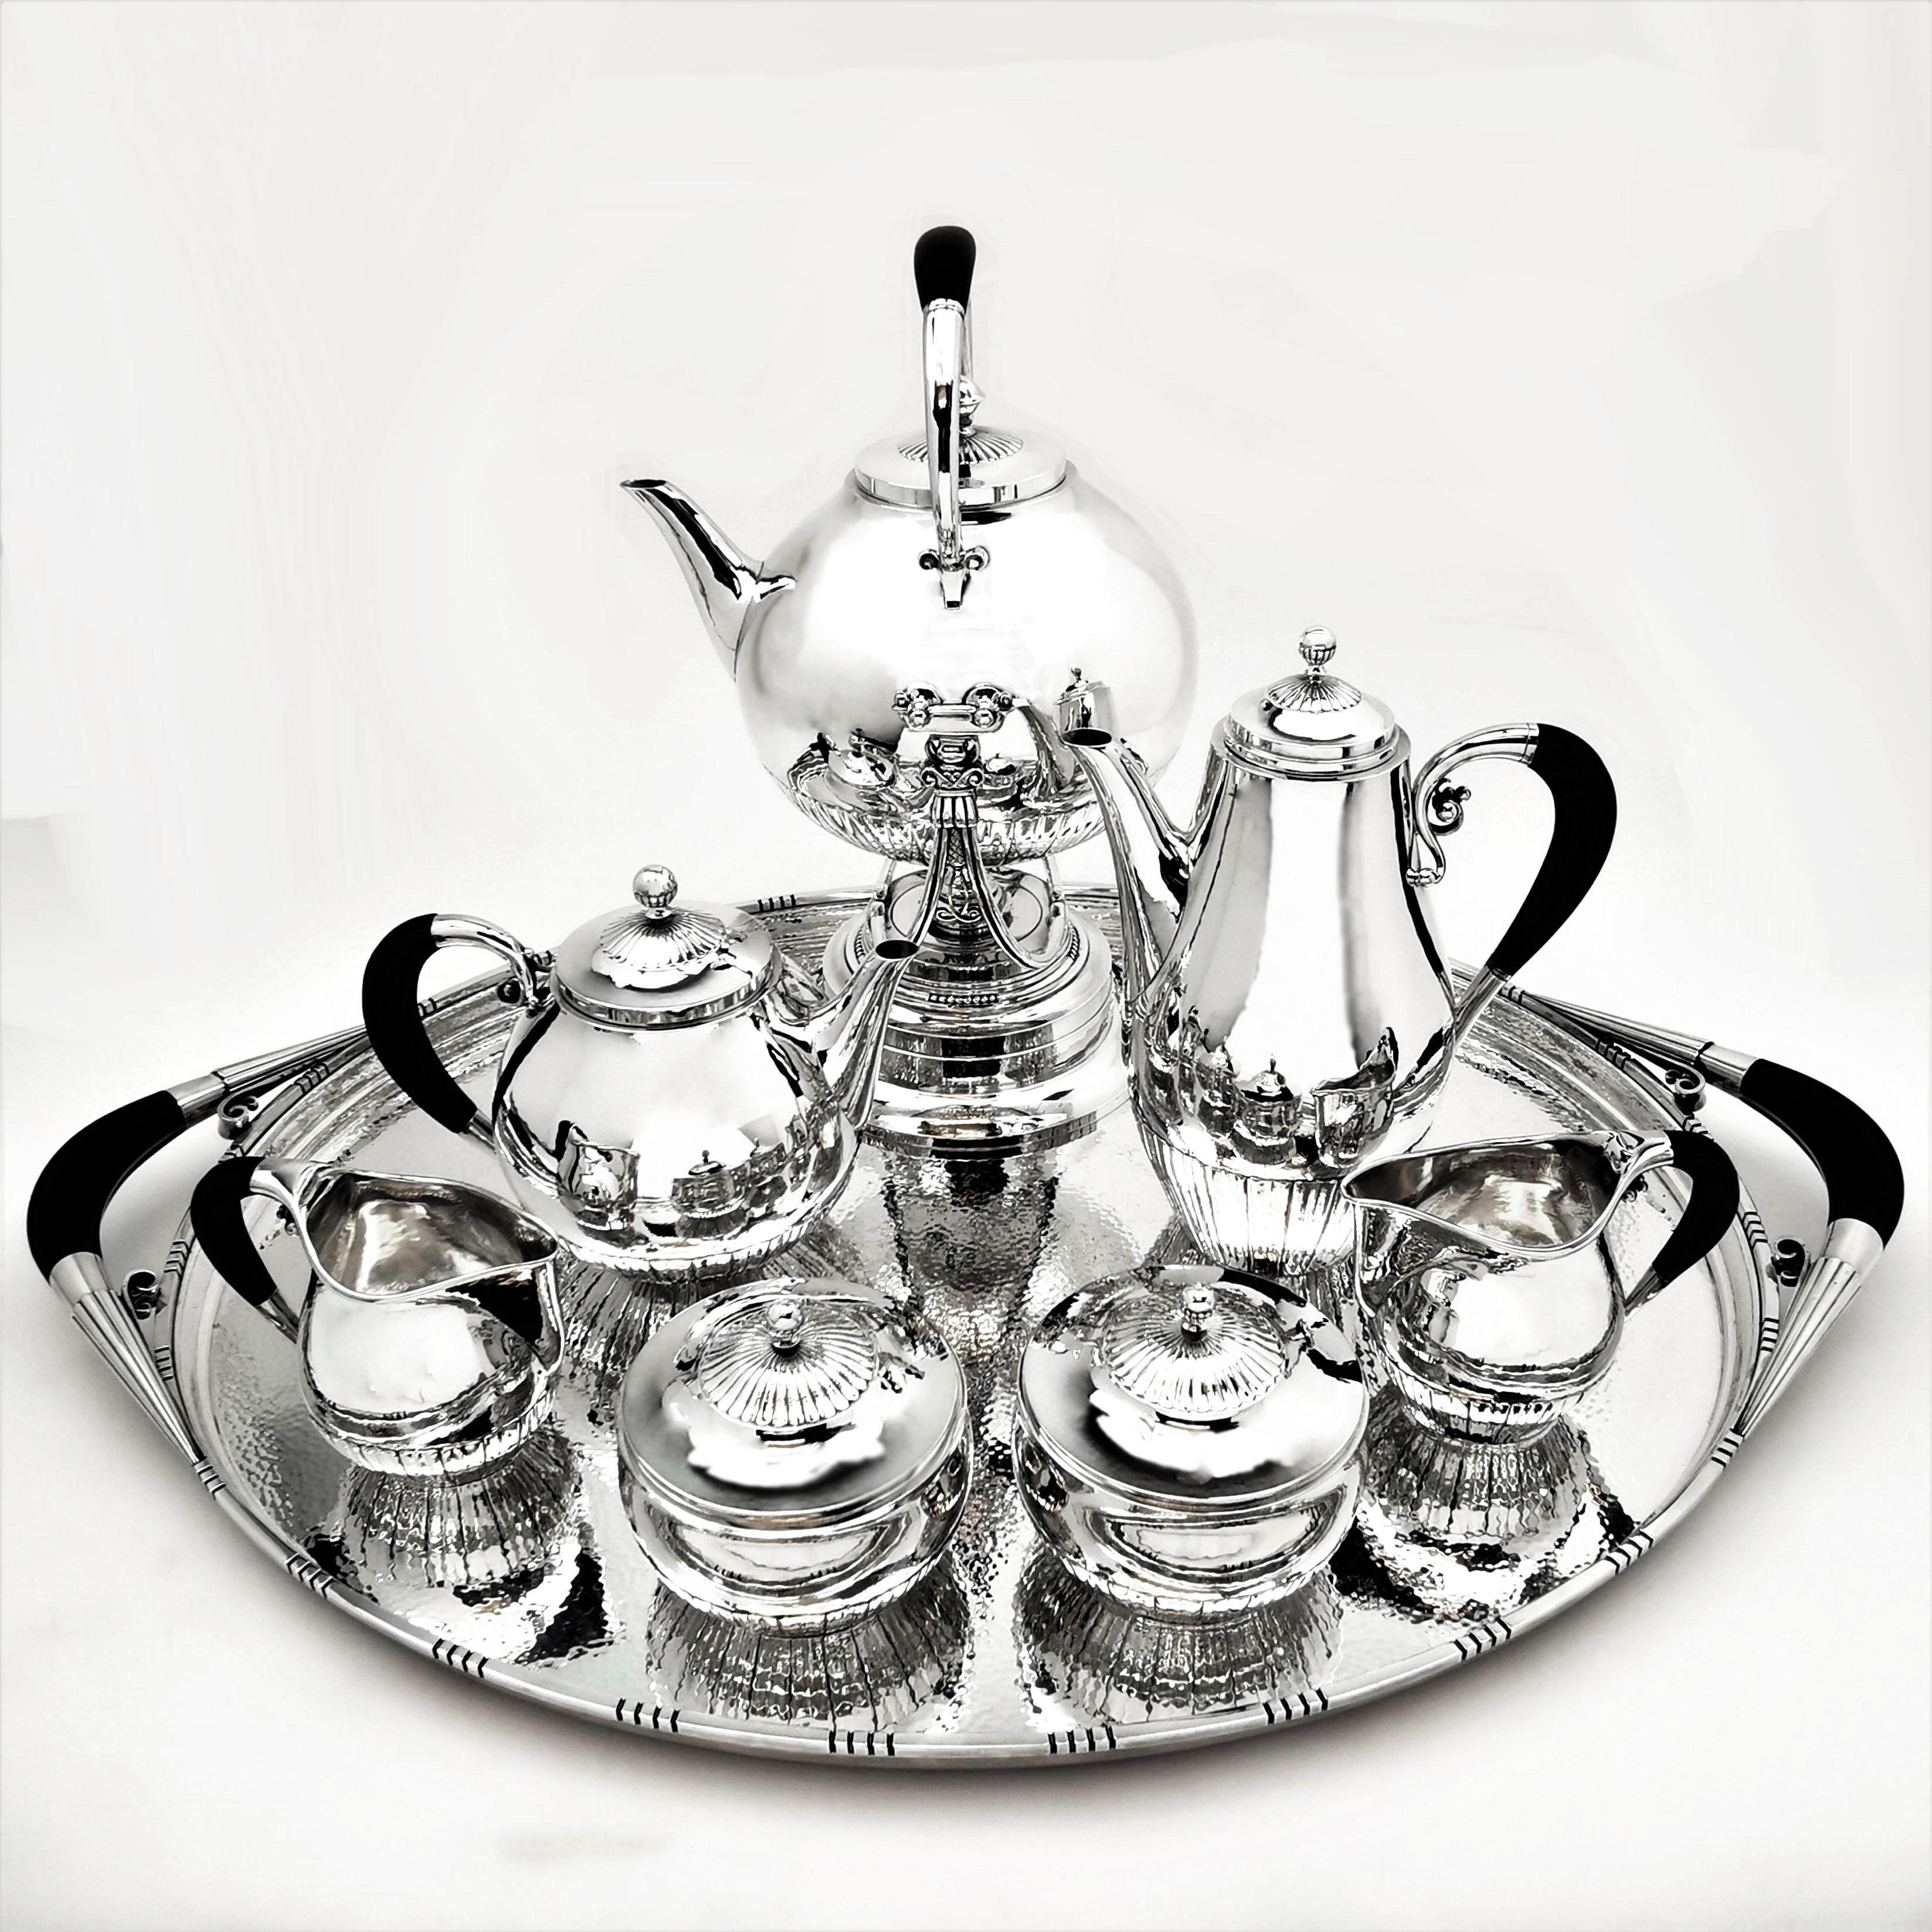 Magnifique service à thé et à café danois de 8 pièces de Georg Jensen au motif Cosmos. L'ensemble comprend une bouilloire sur pied, une cafetière, une théière, deux pots à lait/crème et deux sucriers à couvercle sur un grand plateau à thé.
Les